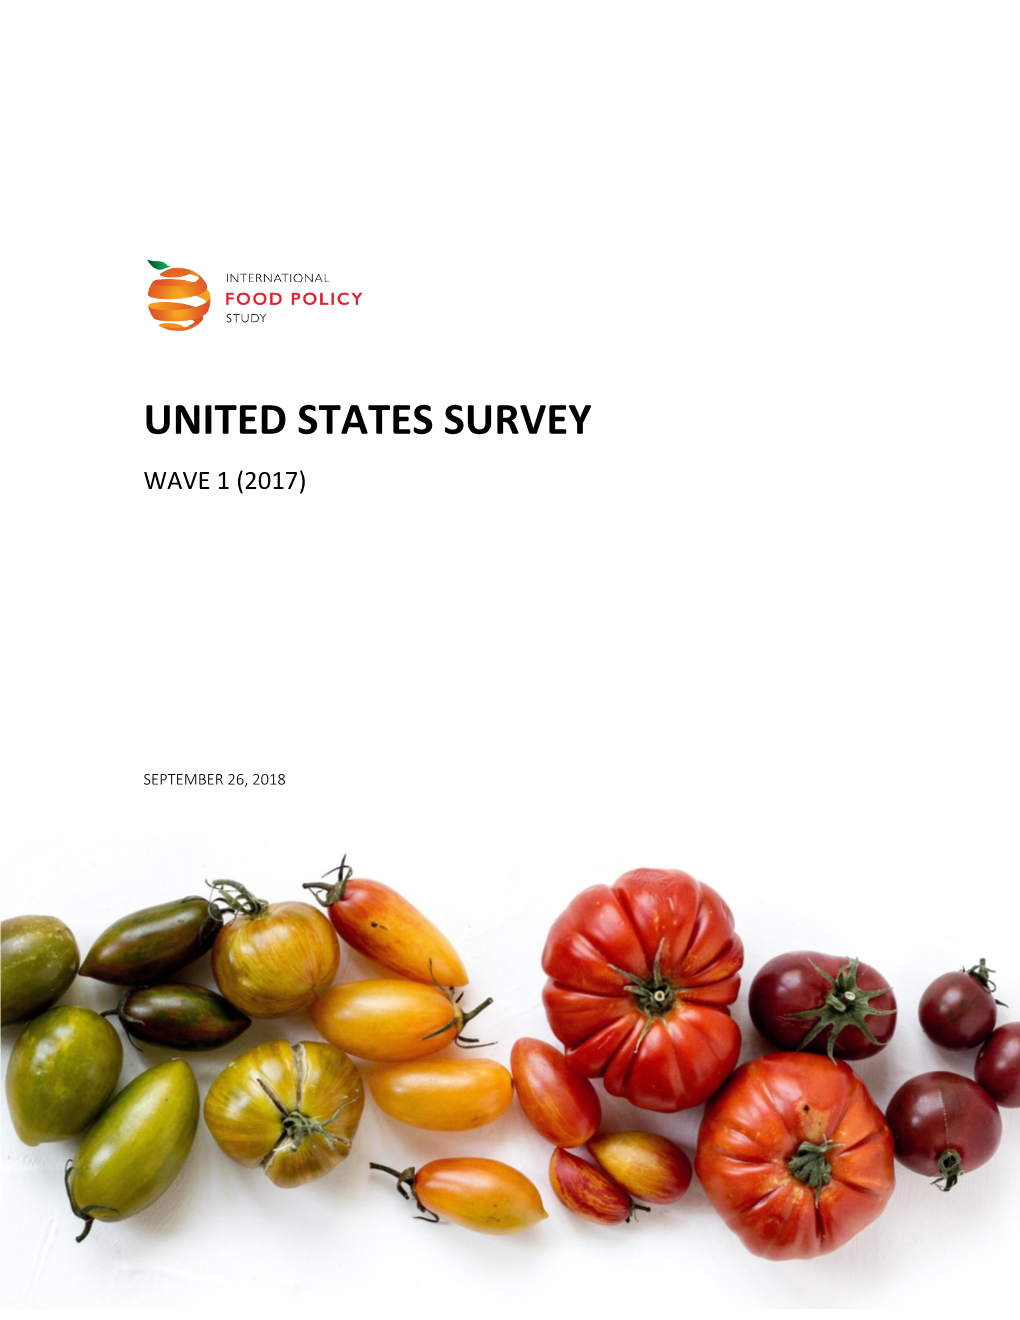 United States Survey Wave 1 (2017)